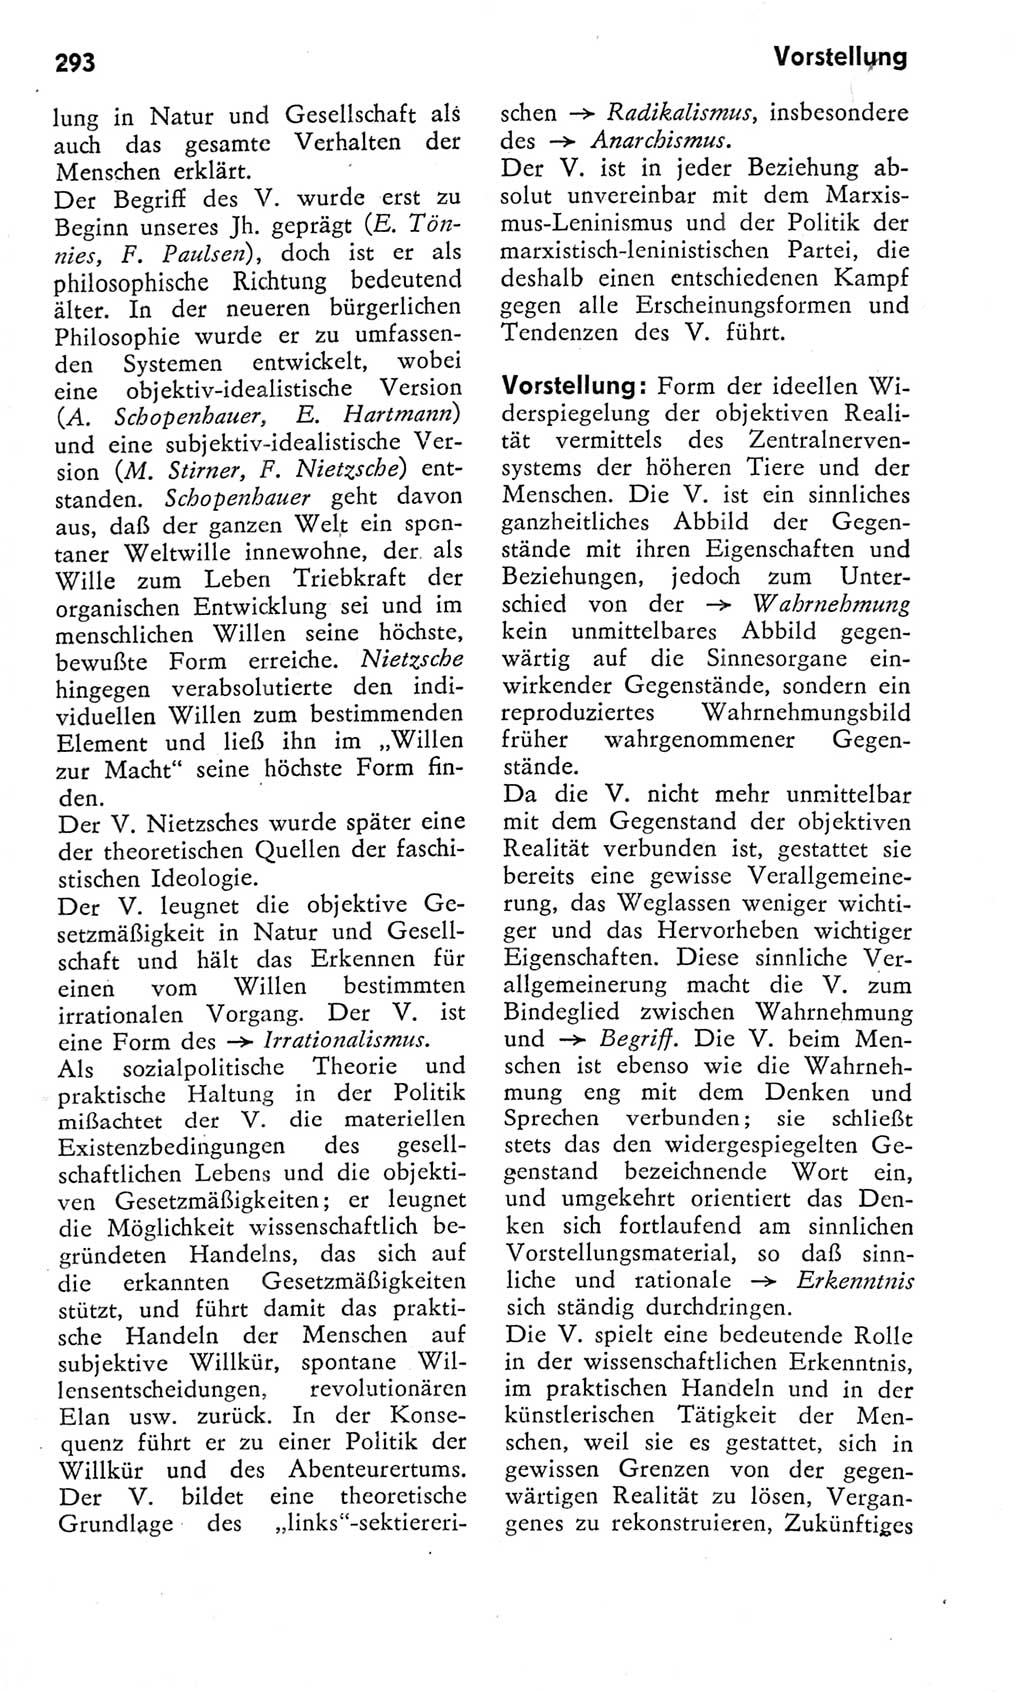 Kleines Wörterbuch der marxistisch-leninistischen Philosophie [Deutsche Demokratische Republik (DDR)] 1975, Seite 293 (Kl. Wb. ML Phil. DDR 1975, S. 293)